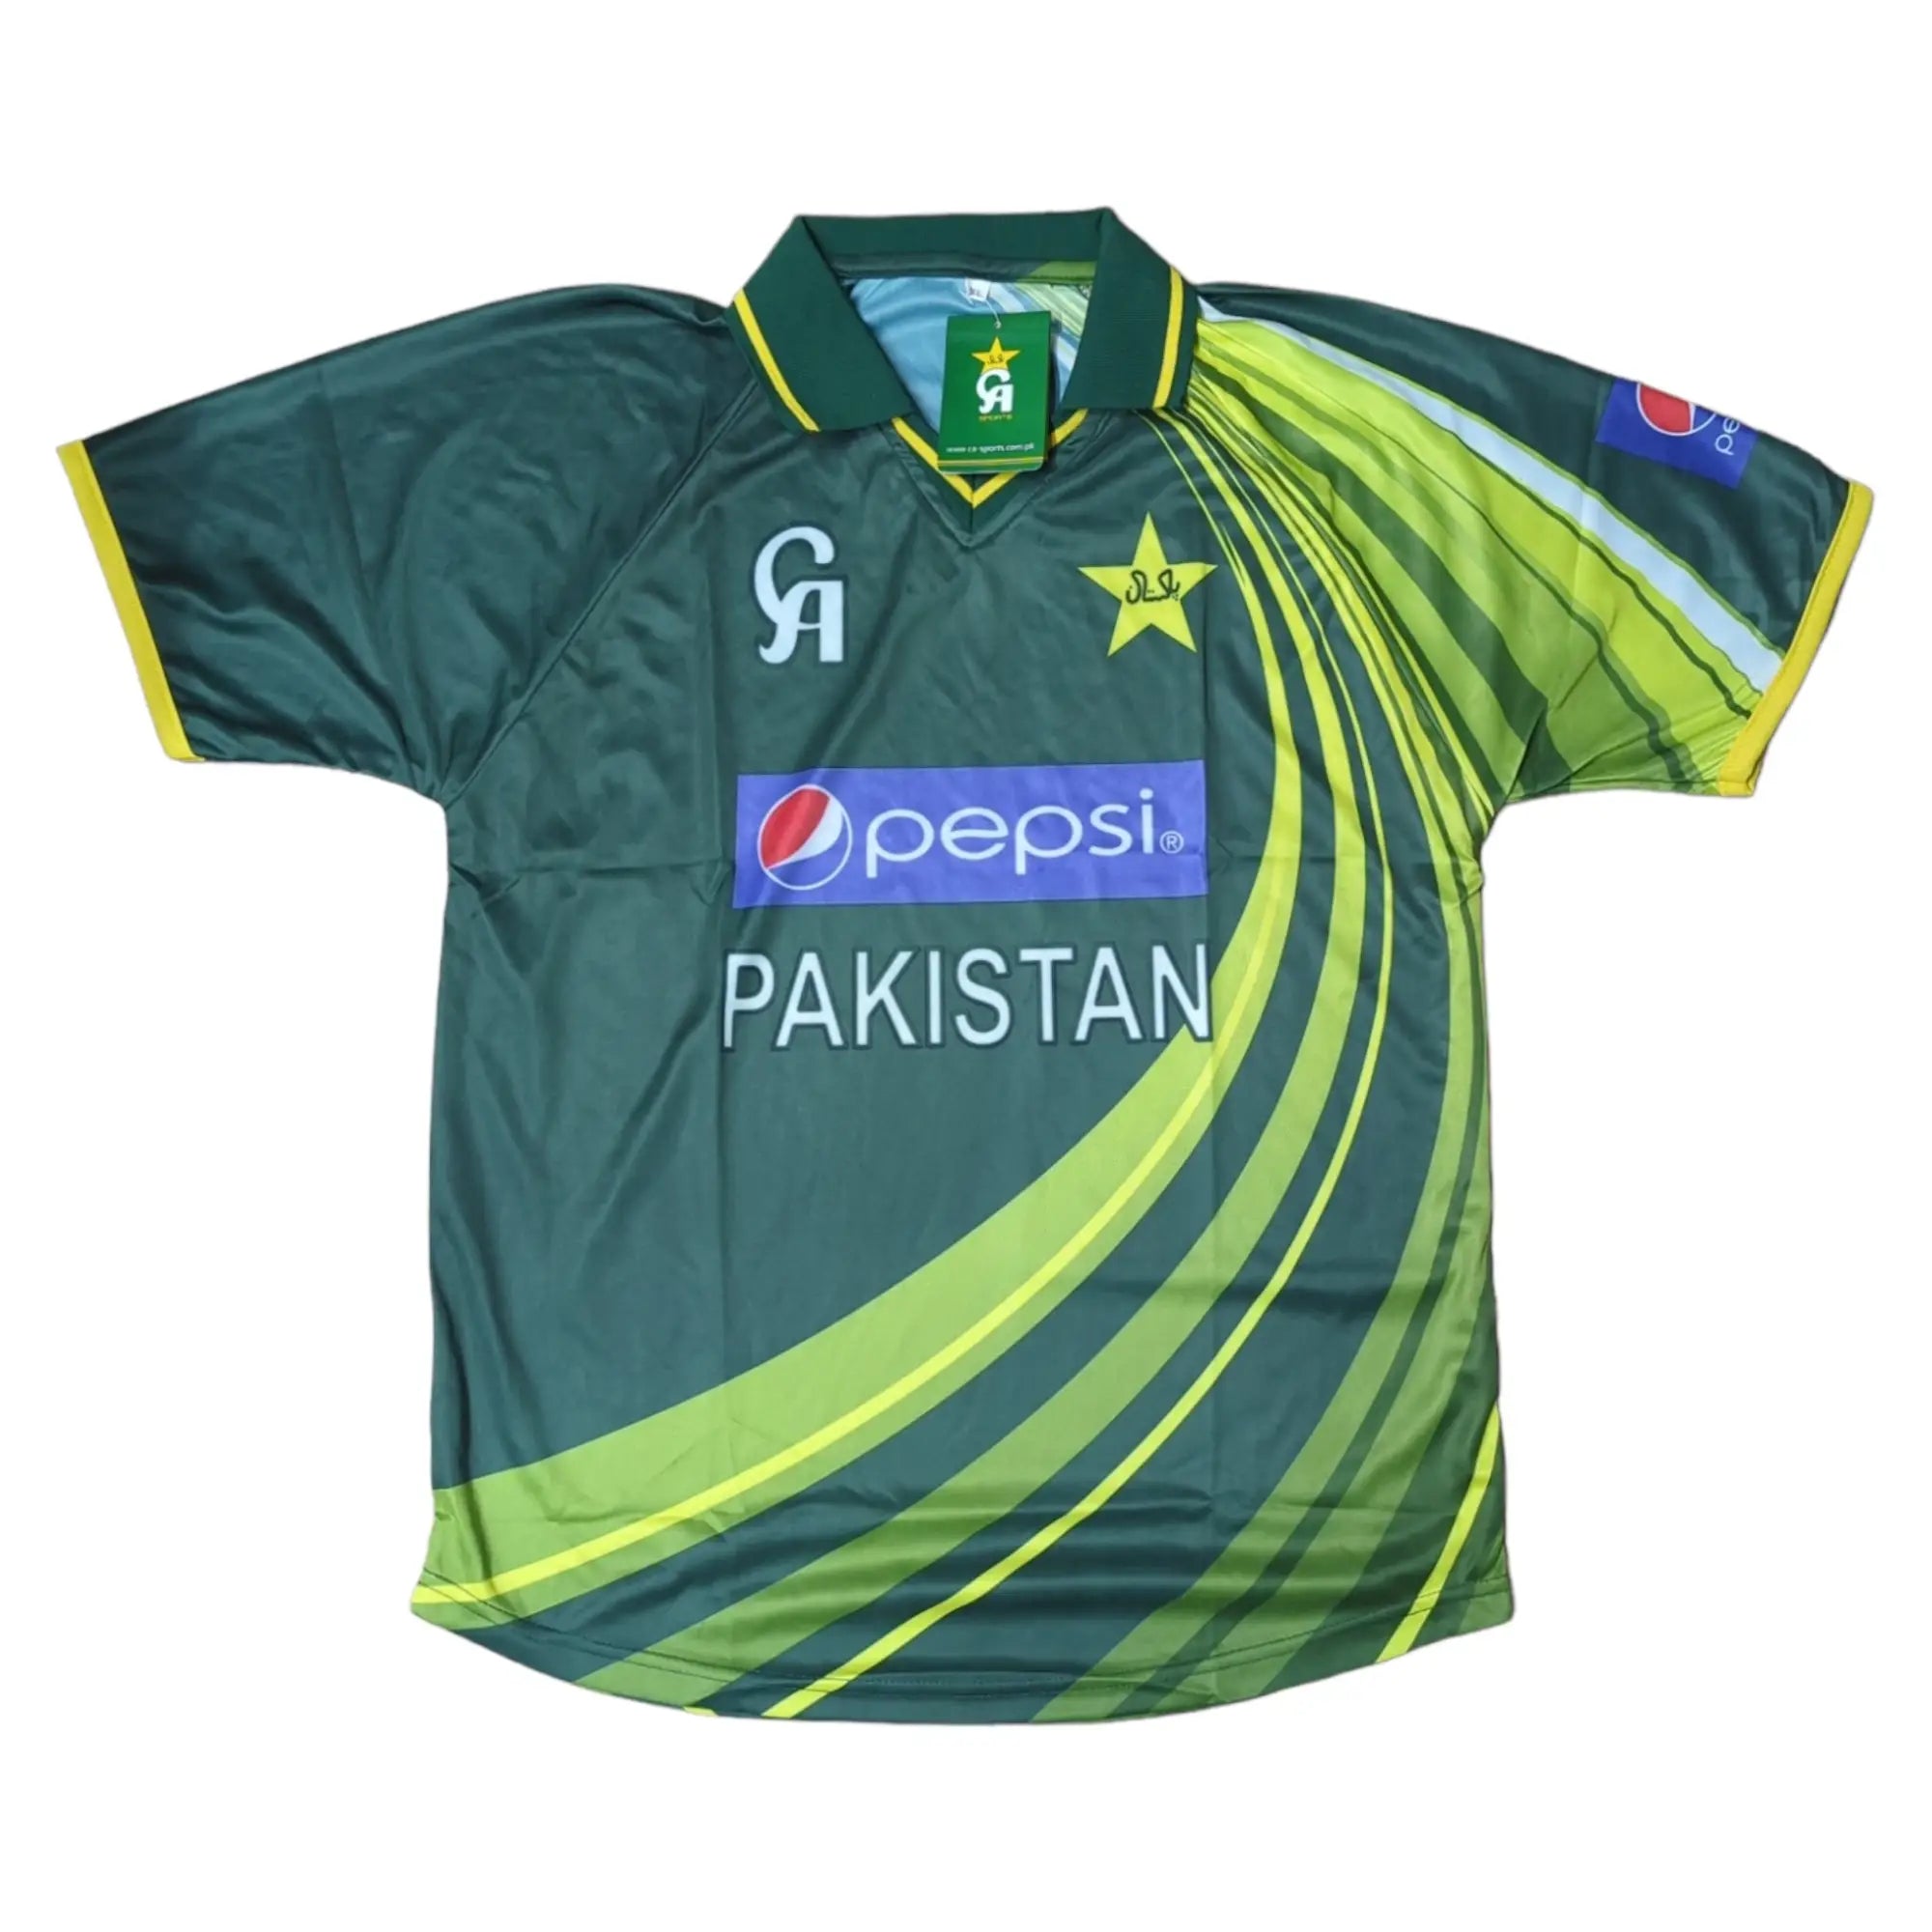 Pakistan Cricket Team Jersey Shirt Green - X-Large (Pakistan Size) / Green - Team Shirt